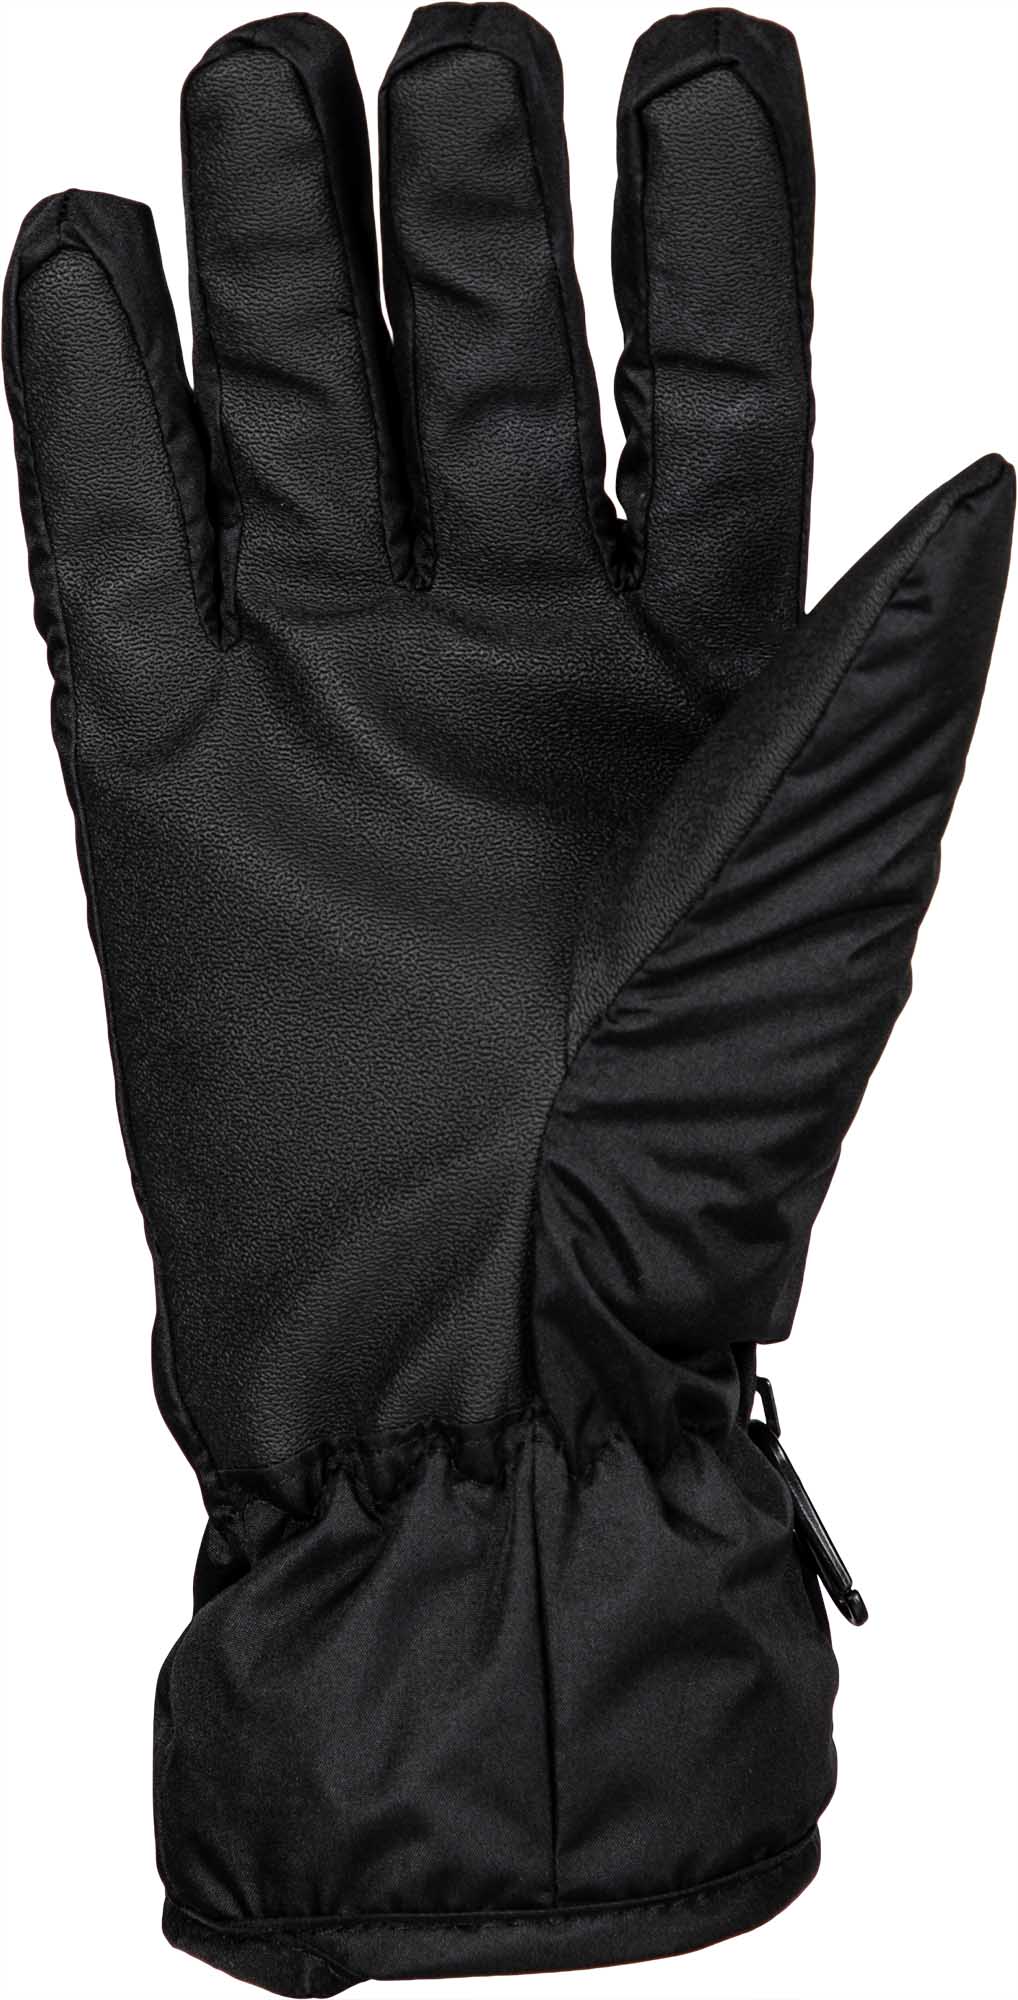 Women’s finger gloves